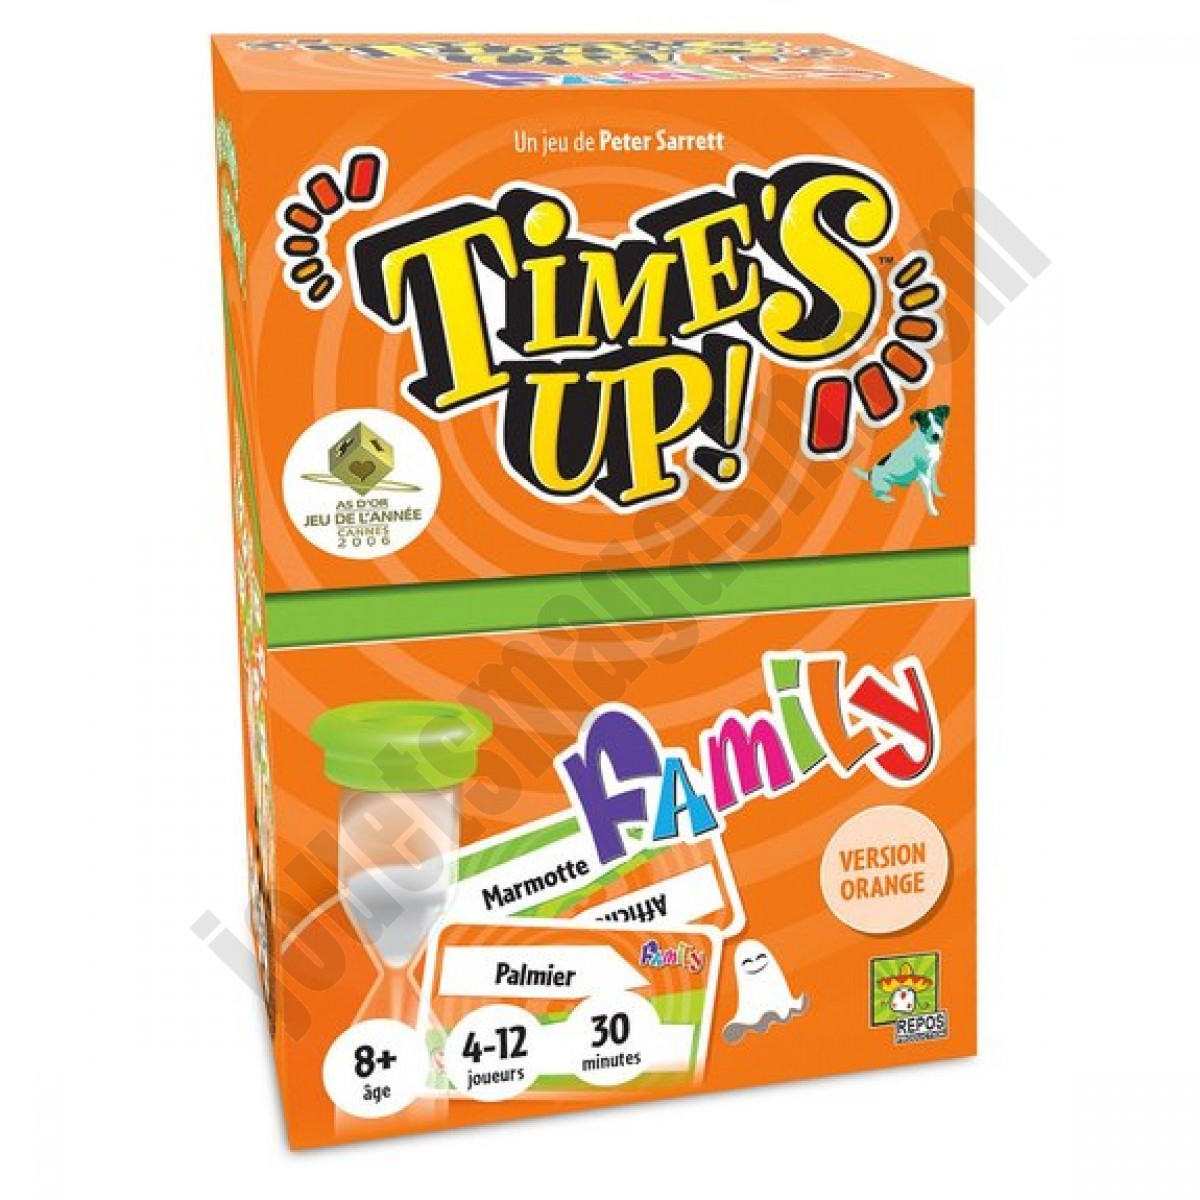 Time's Up Family Orange En promotion - Time's Up Family Orange En promotion